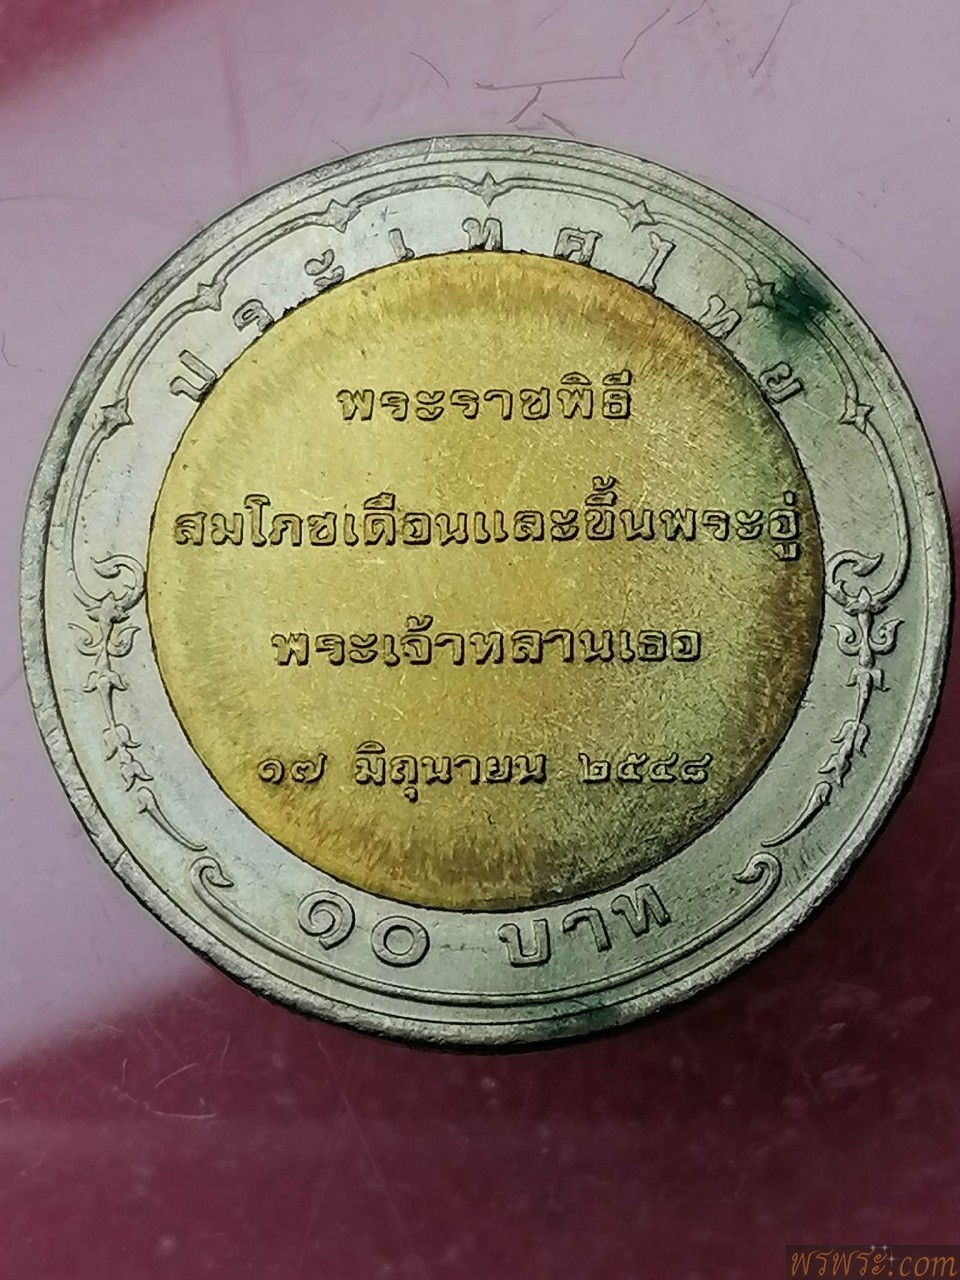 เหรียญ พระองค์เจ้าทีปังกรรัศมีโชติ๑๗มิถุนายน๒๕๔๘